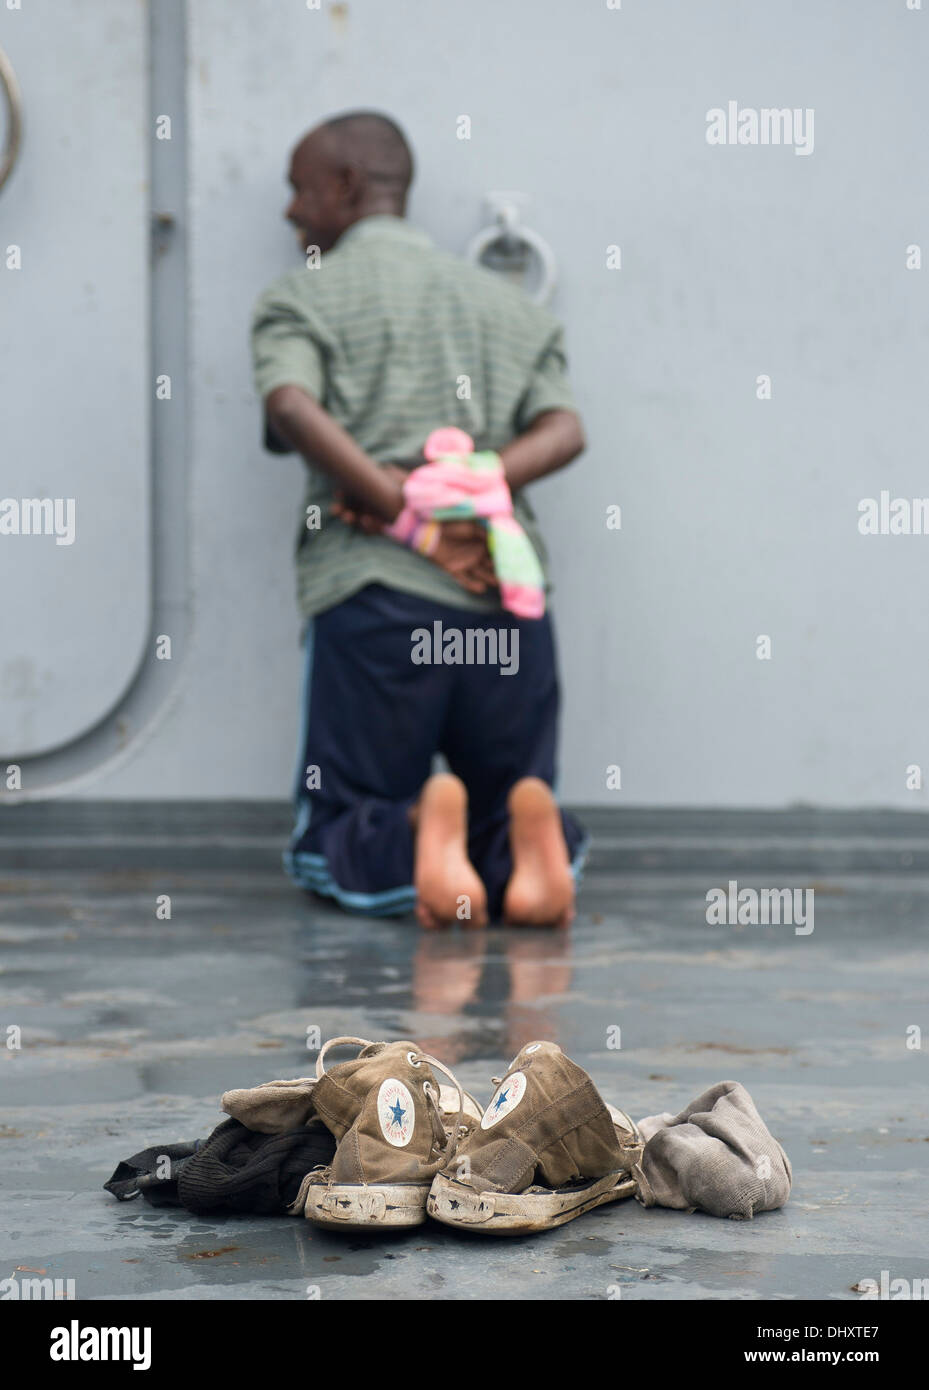 DJIBOUTI, Djibouti (nov. 14, 2013) - La simulation d'un détenu doit attendre après une fouille à bord d'un navire cible pendant l'exercice 2013 dans l'Express Cutlass Golfe de Tadjourah près de Djibouti. Exercice Cutlass Express 2013 est un exercice maritime multinational en t Banque D'Images